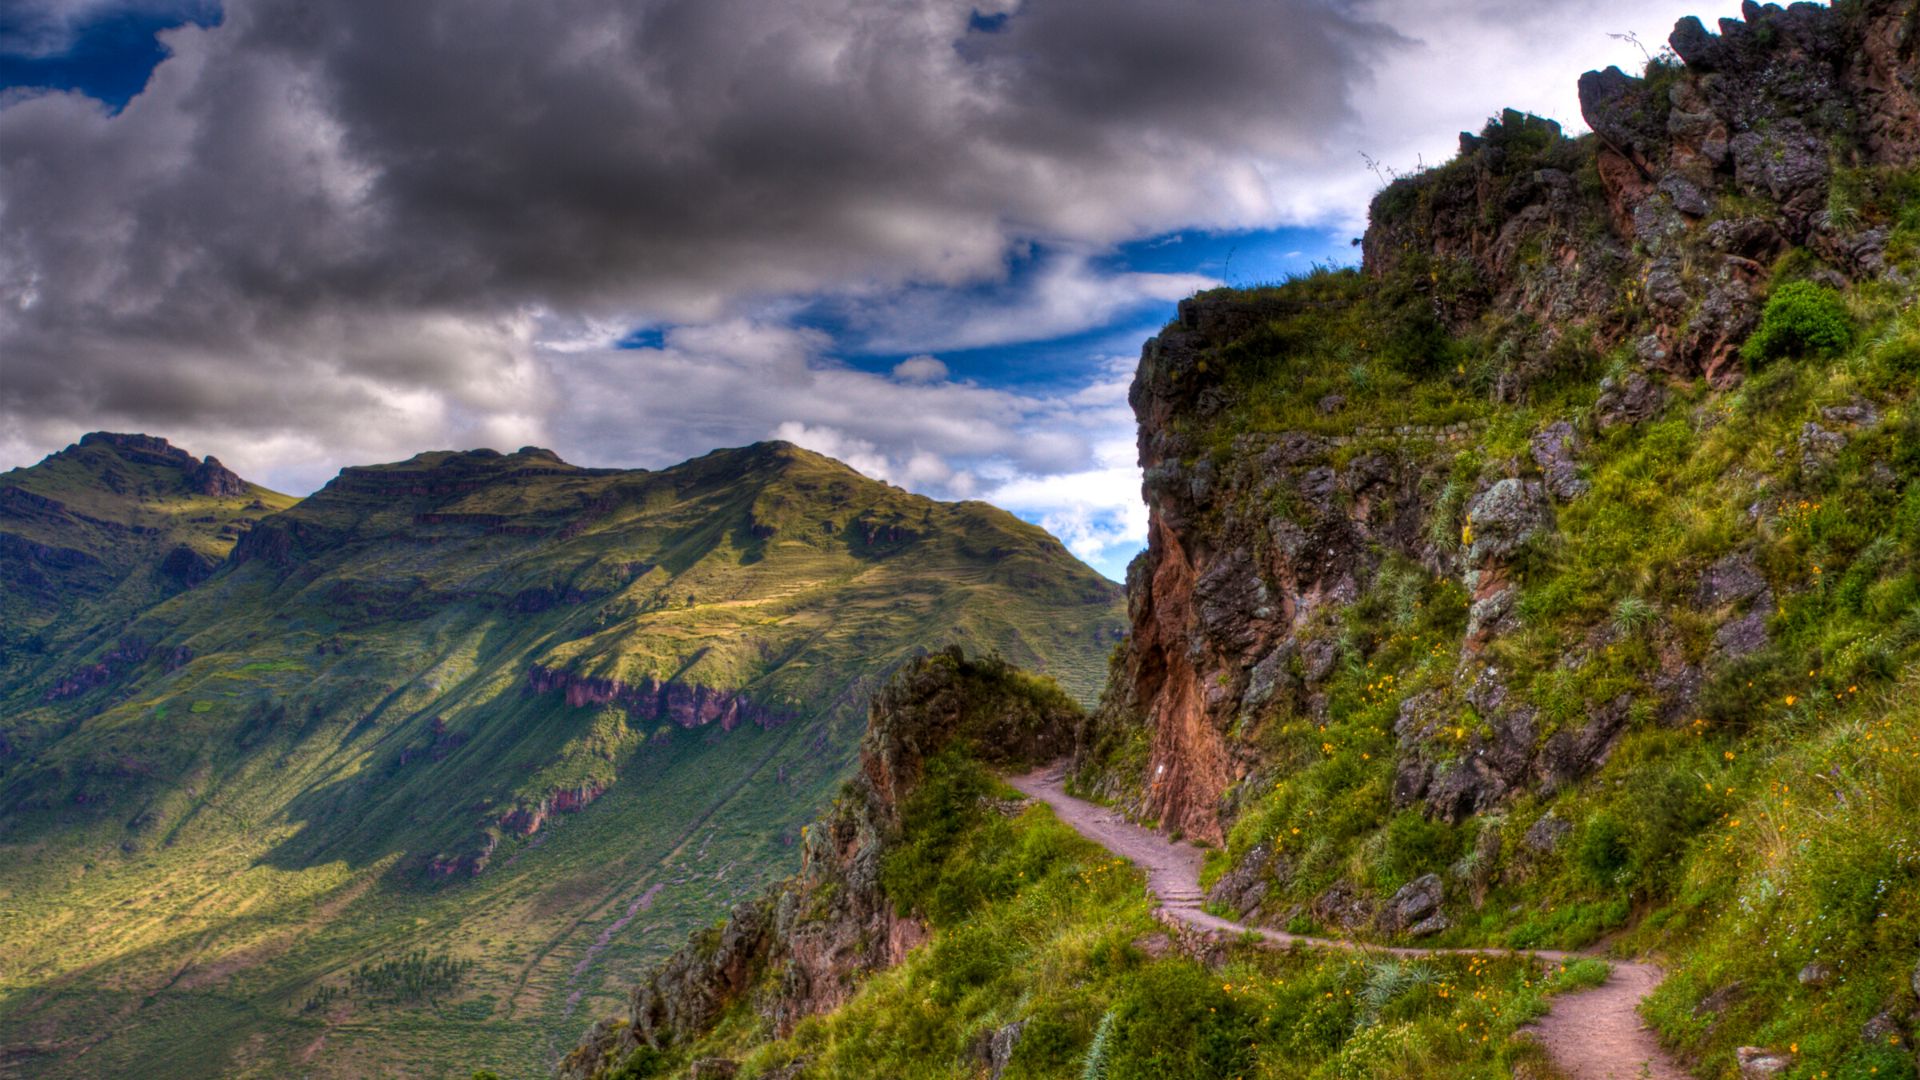 Inca Trail hike to Machu Picchu in Peru